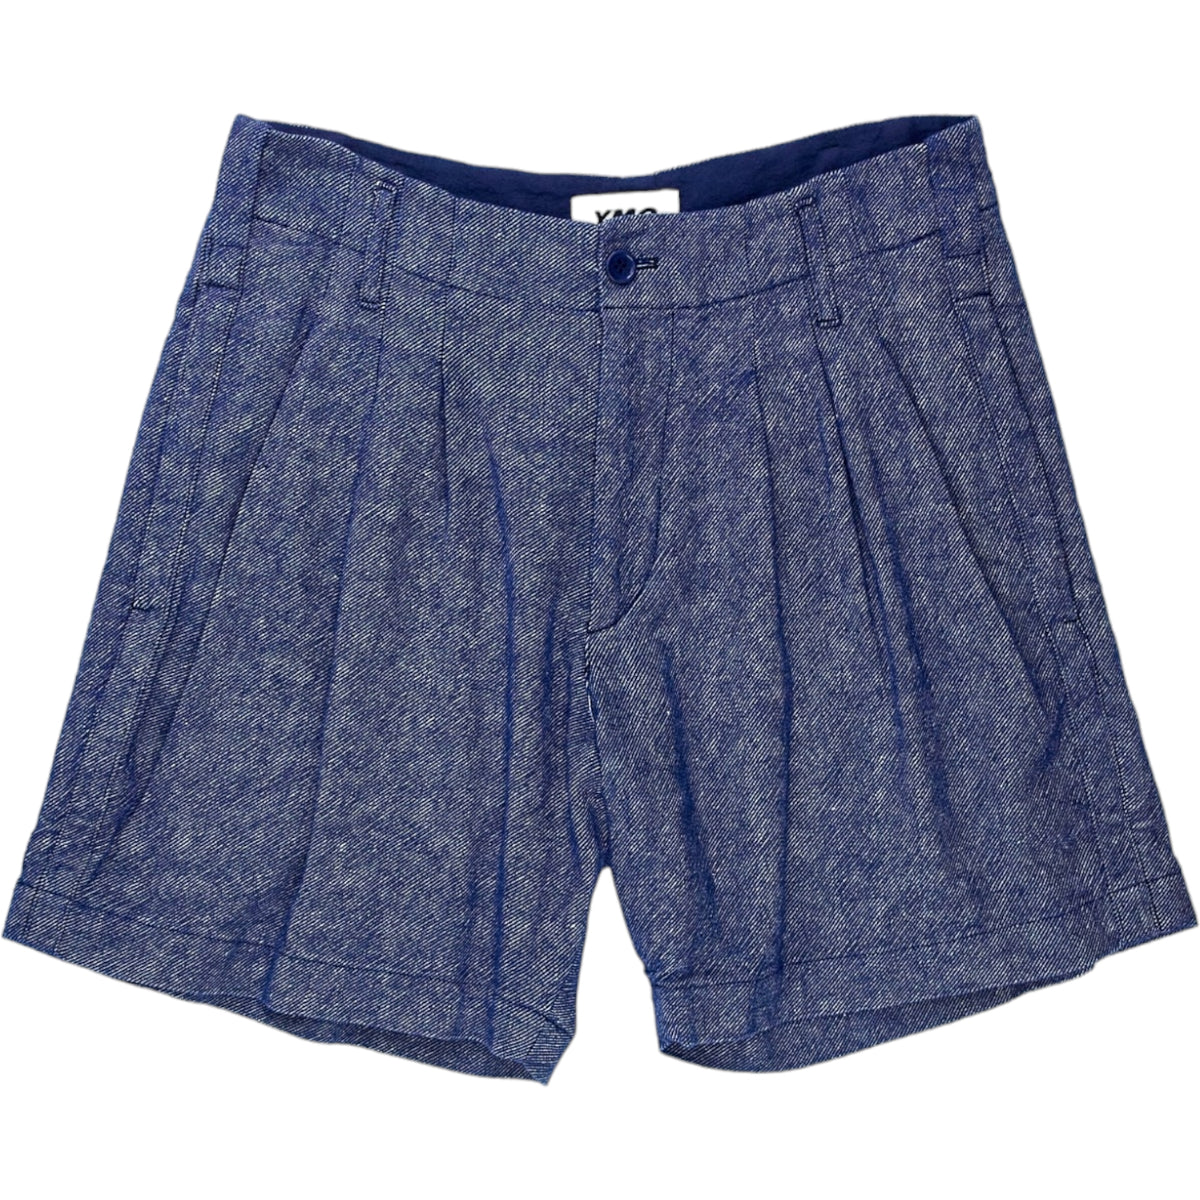 YMC Blue Brushed Twill Shorts